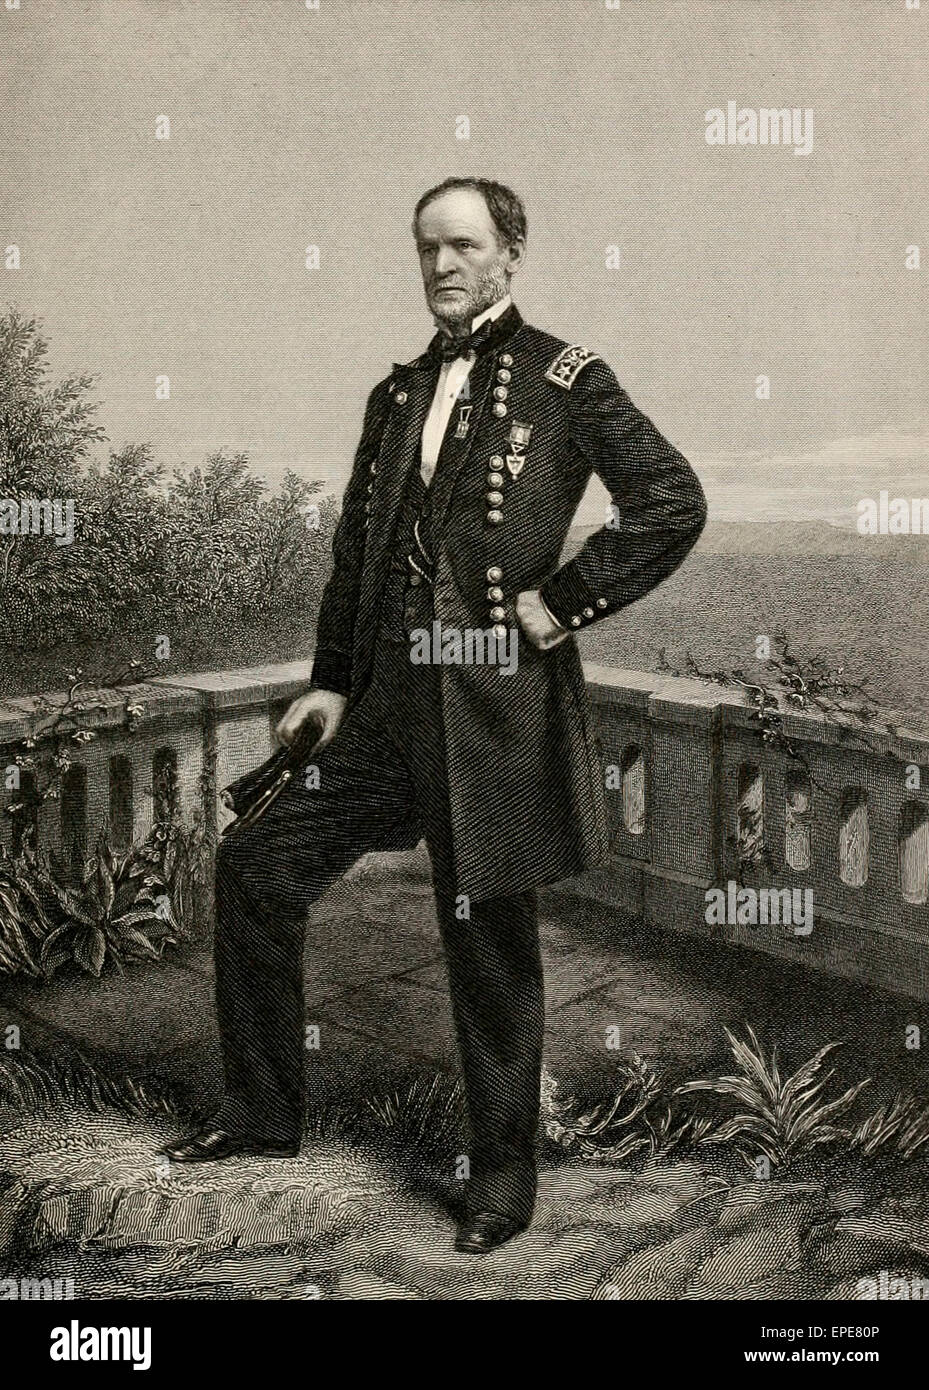 Général de l'Union William Sherman T durant la guerre civile USA Banque D'Images